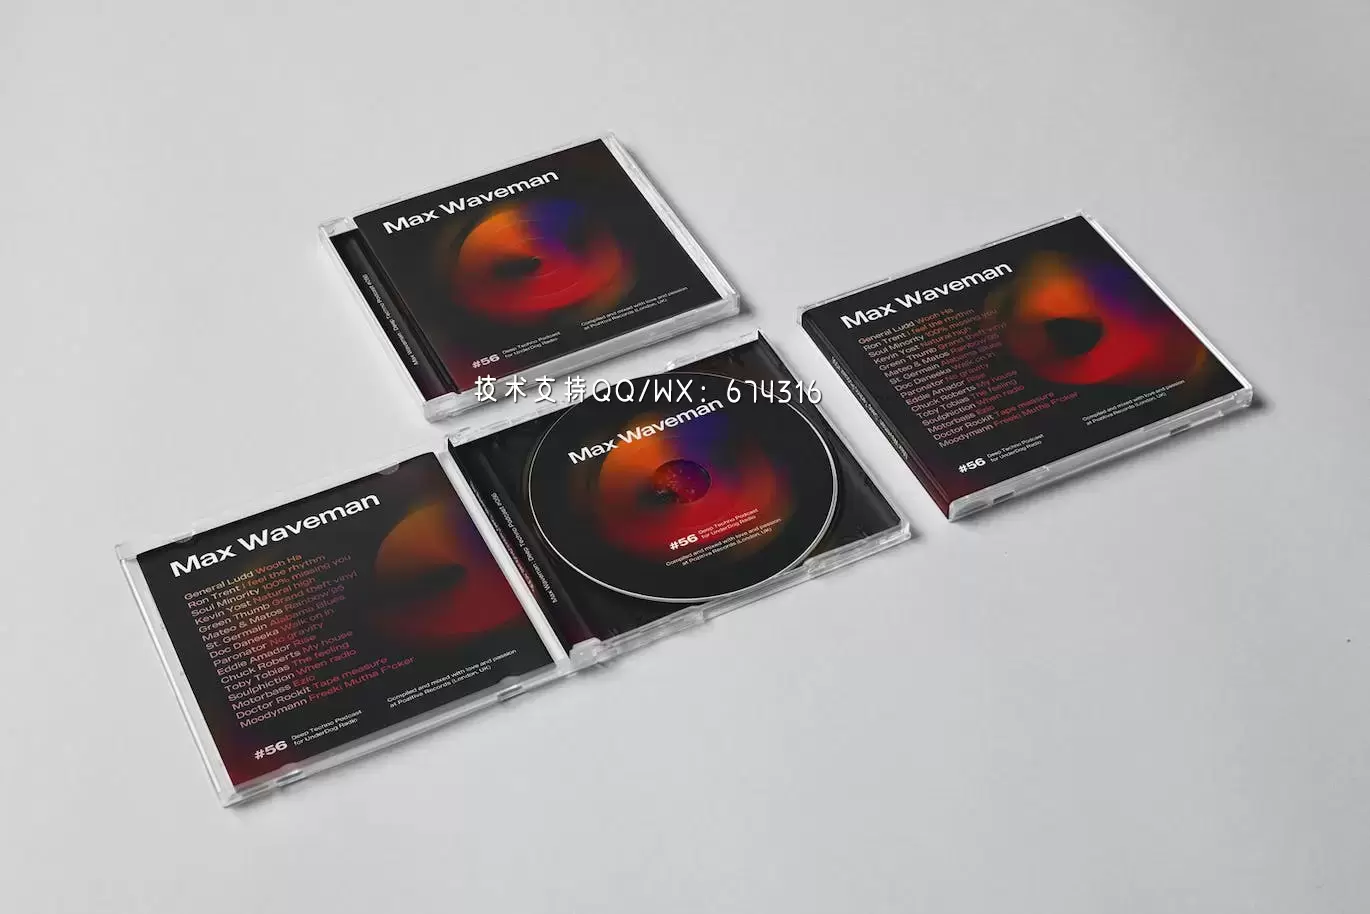 时尚高端DJ CD光盘光碟包装设计VI样机展示模型mockups免费下载插图3